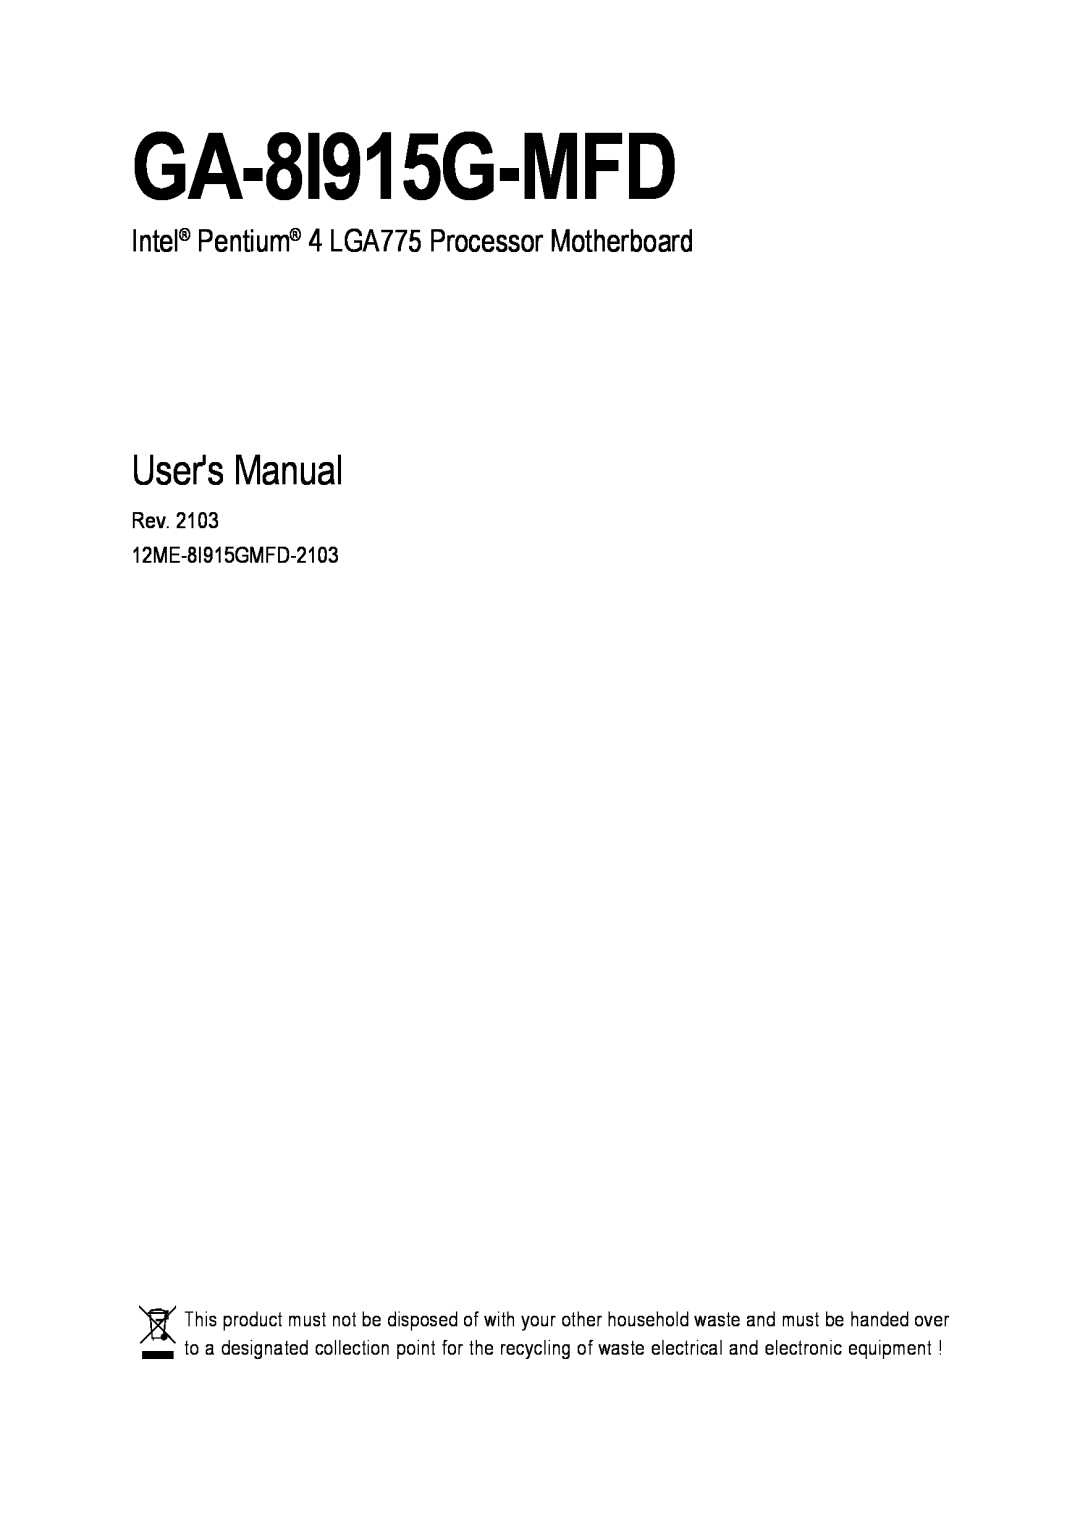 Intel GA-8I915G-MFD user manual Users Manual, Intel Pentium 4 LGA775 Processor Motherboard 